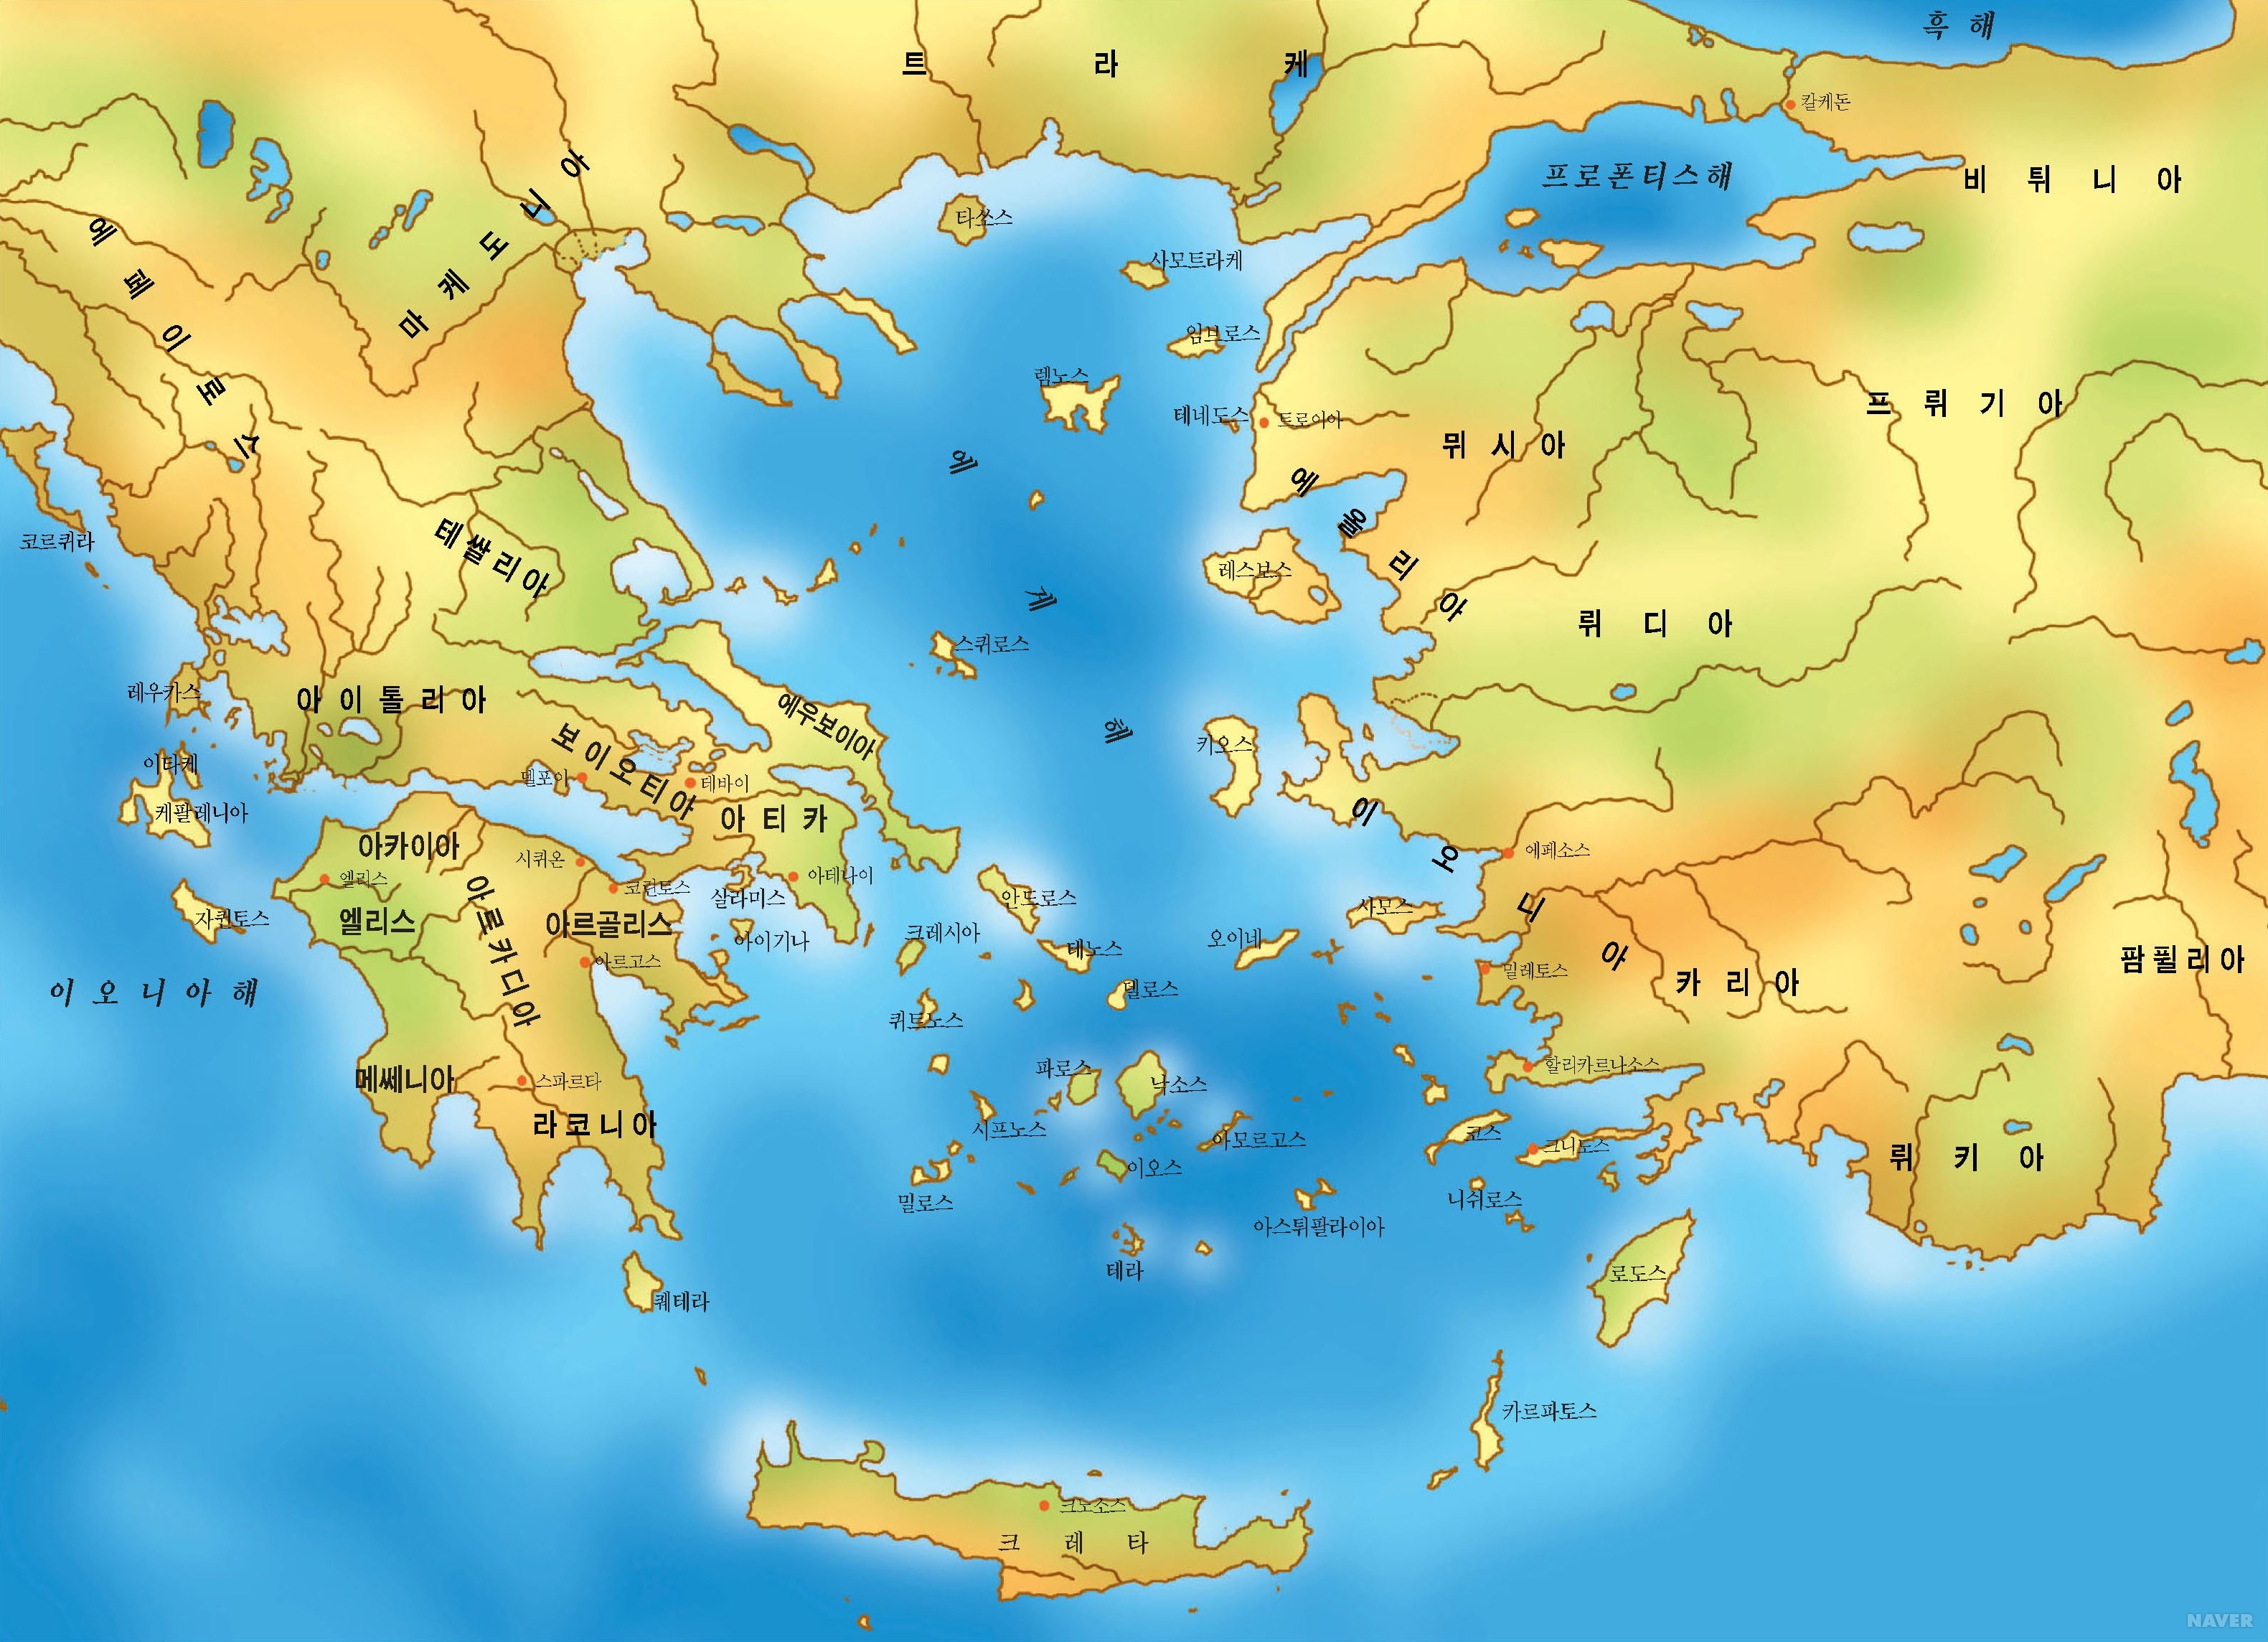 希腊地图: 希腊离线地图和详细地图